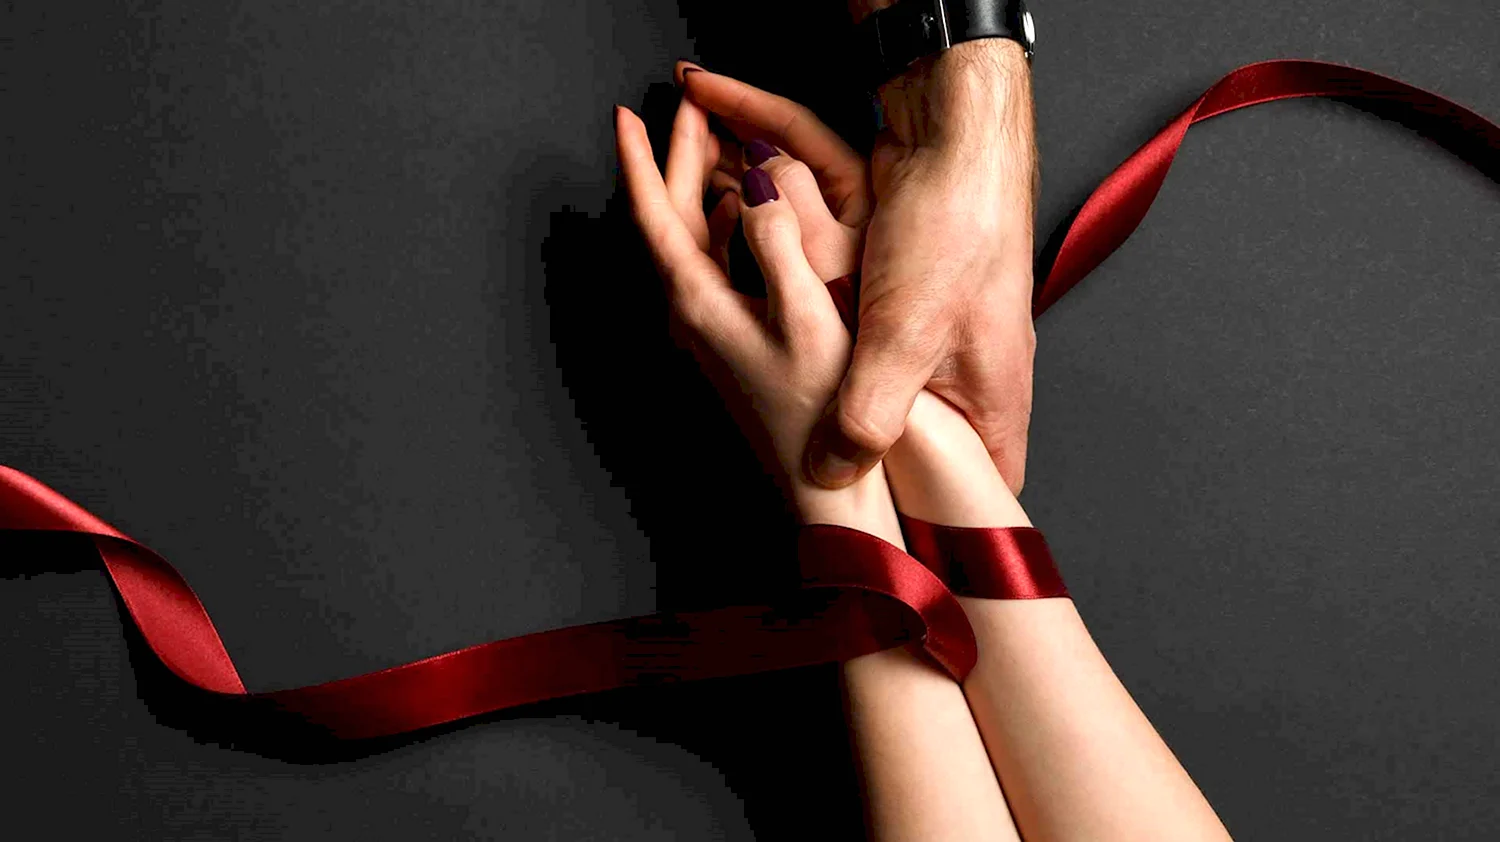 Как связать руки ремнем девушке: пошаговая инструкция для BDSM-игр